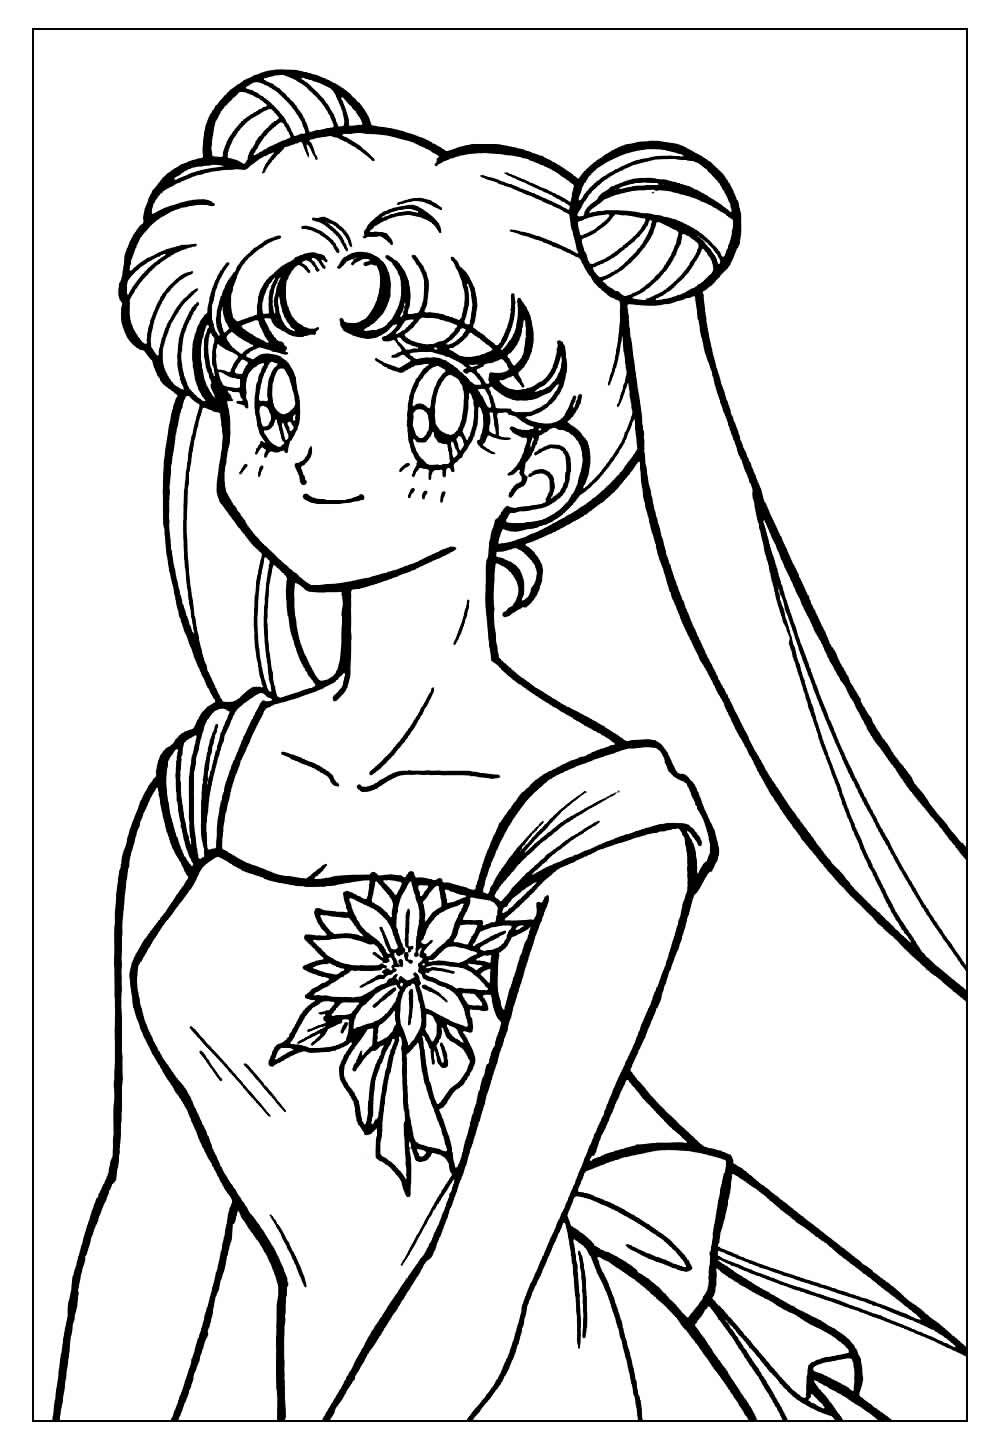 Imagem da Sailor Moon para pintar